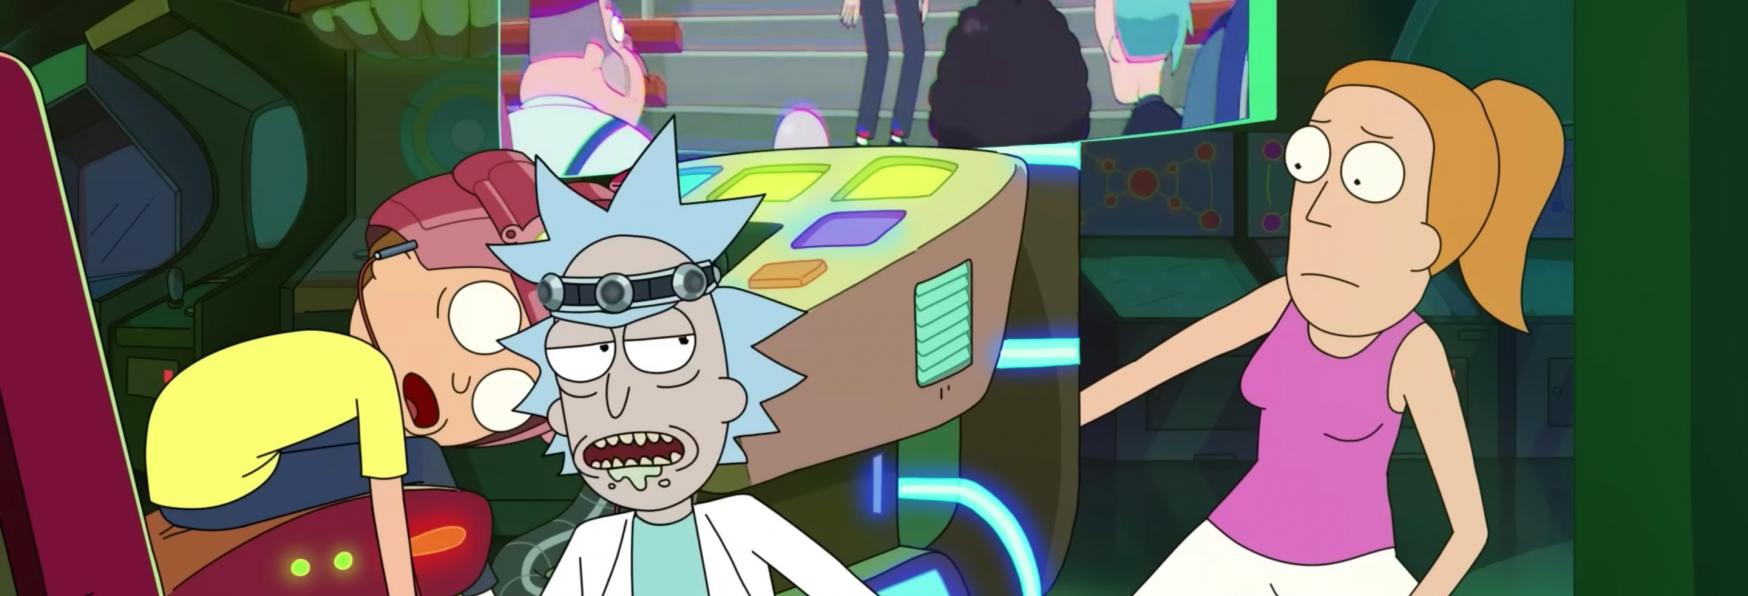 Rick and Morty 6x03: il Video Promozionale del nuovo Episodio della Stagione